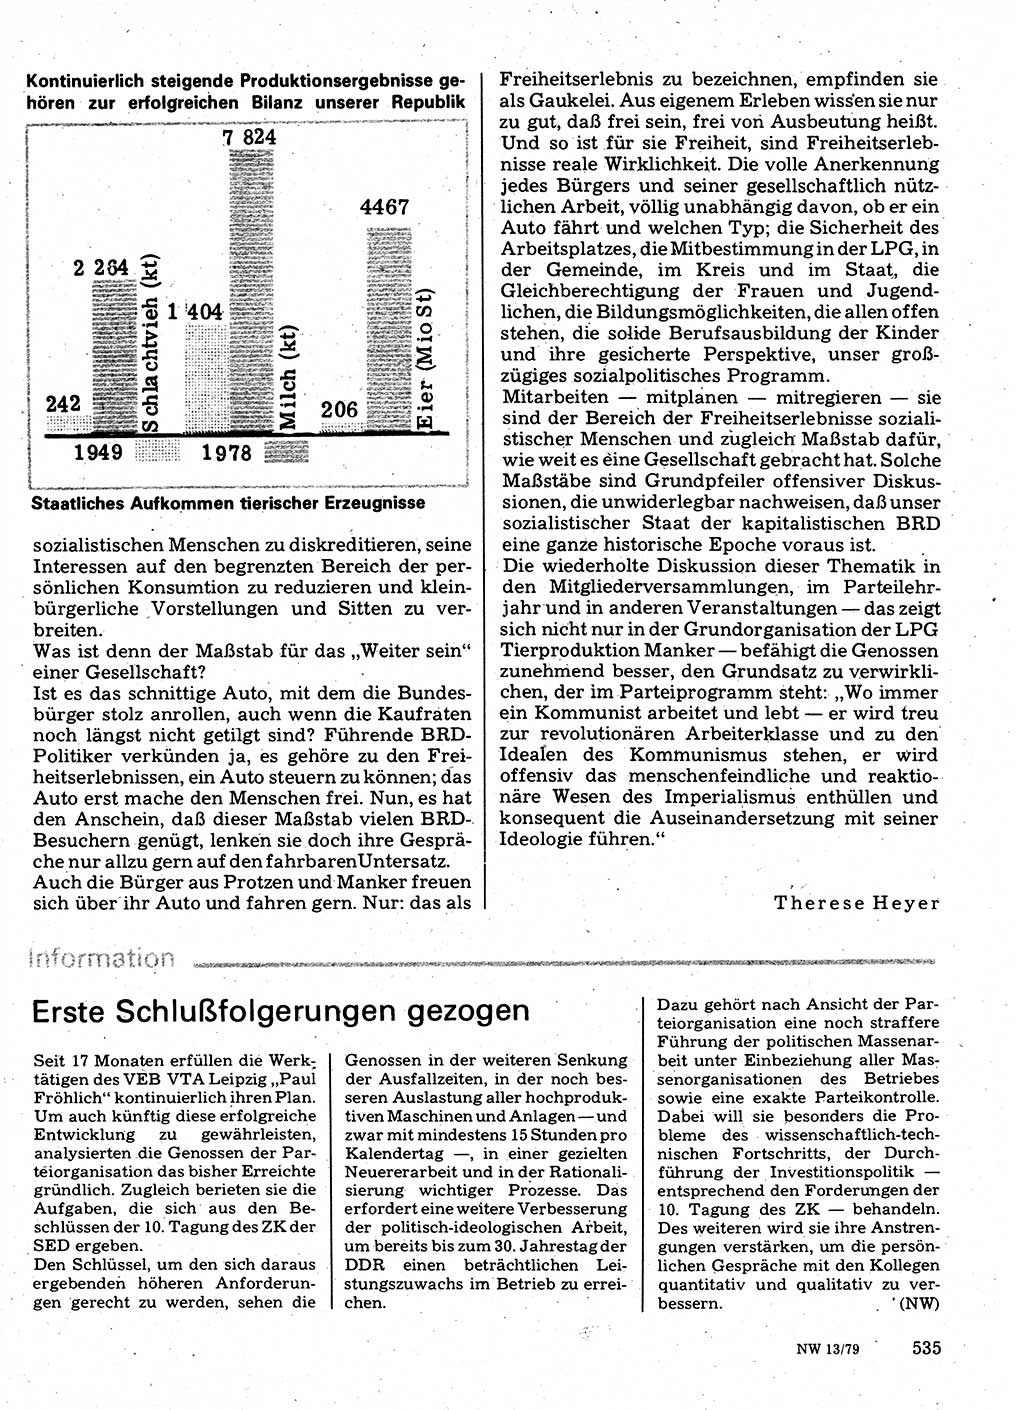 Neuer Weg (NW), Organ des Zentralkomitees (ZK) der SED (Sozialistische Einheitspartei Deutschlands) für Fragen des Parteilebens, 34. Jahrgang [Deutsche Demokratische Republik (DDR)] 1979, Seite 535 (NW ZK SED DDR 1979, S. 535)